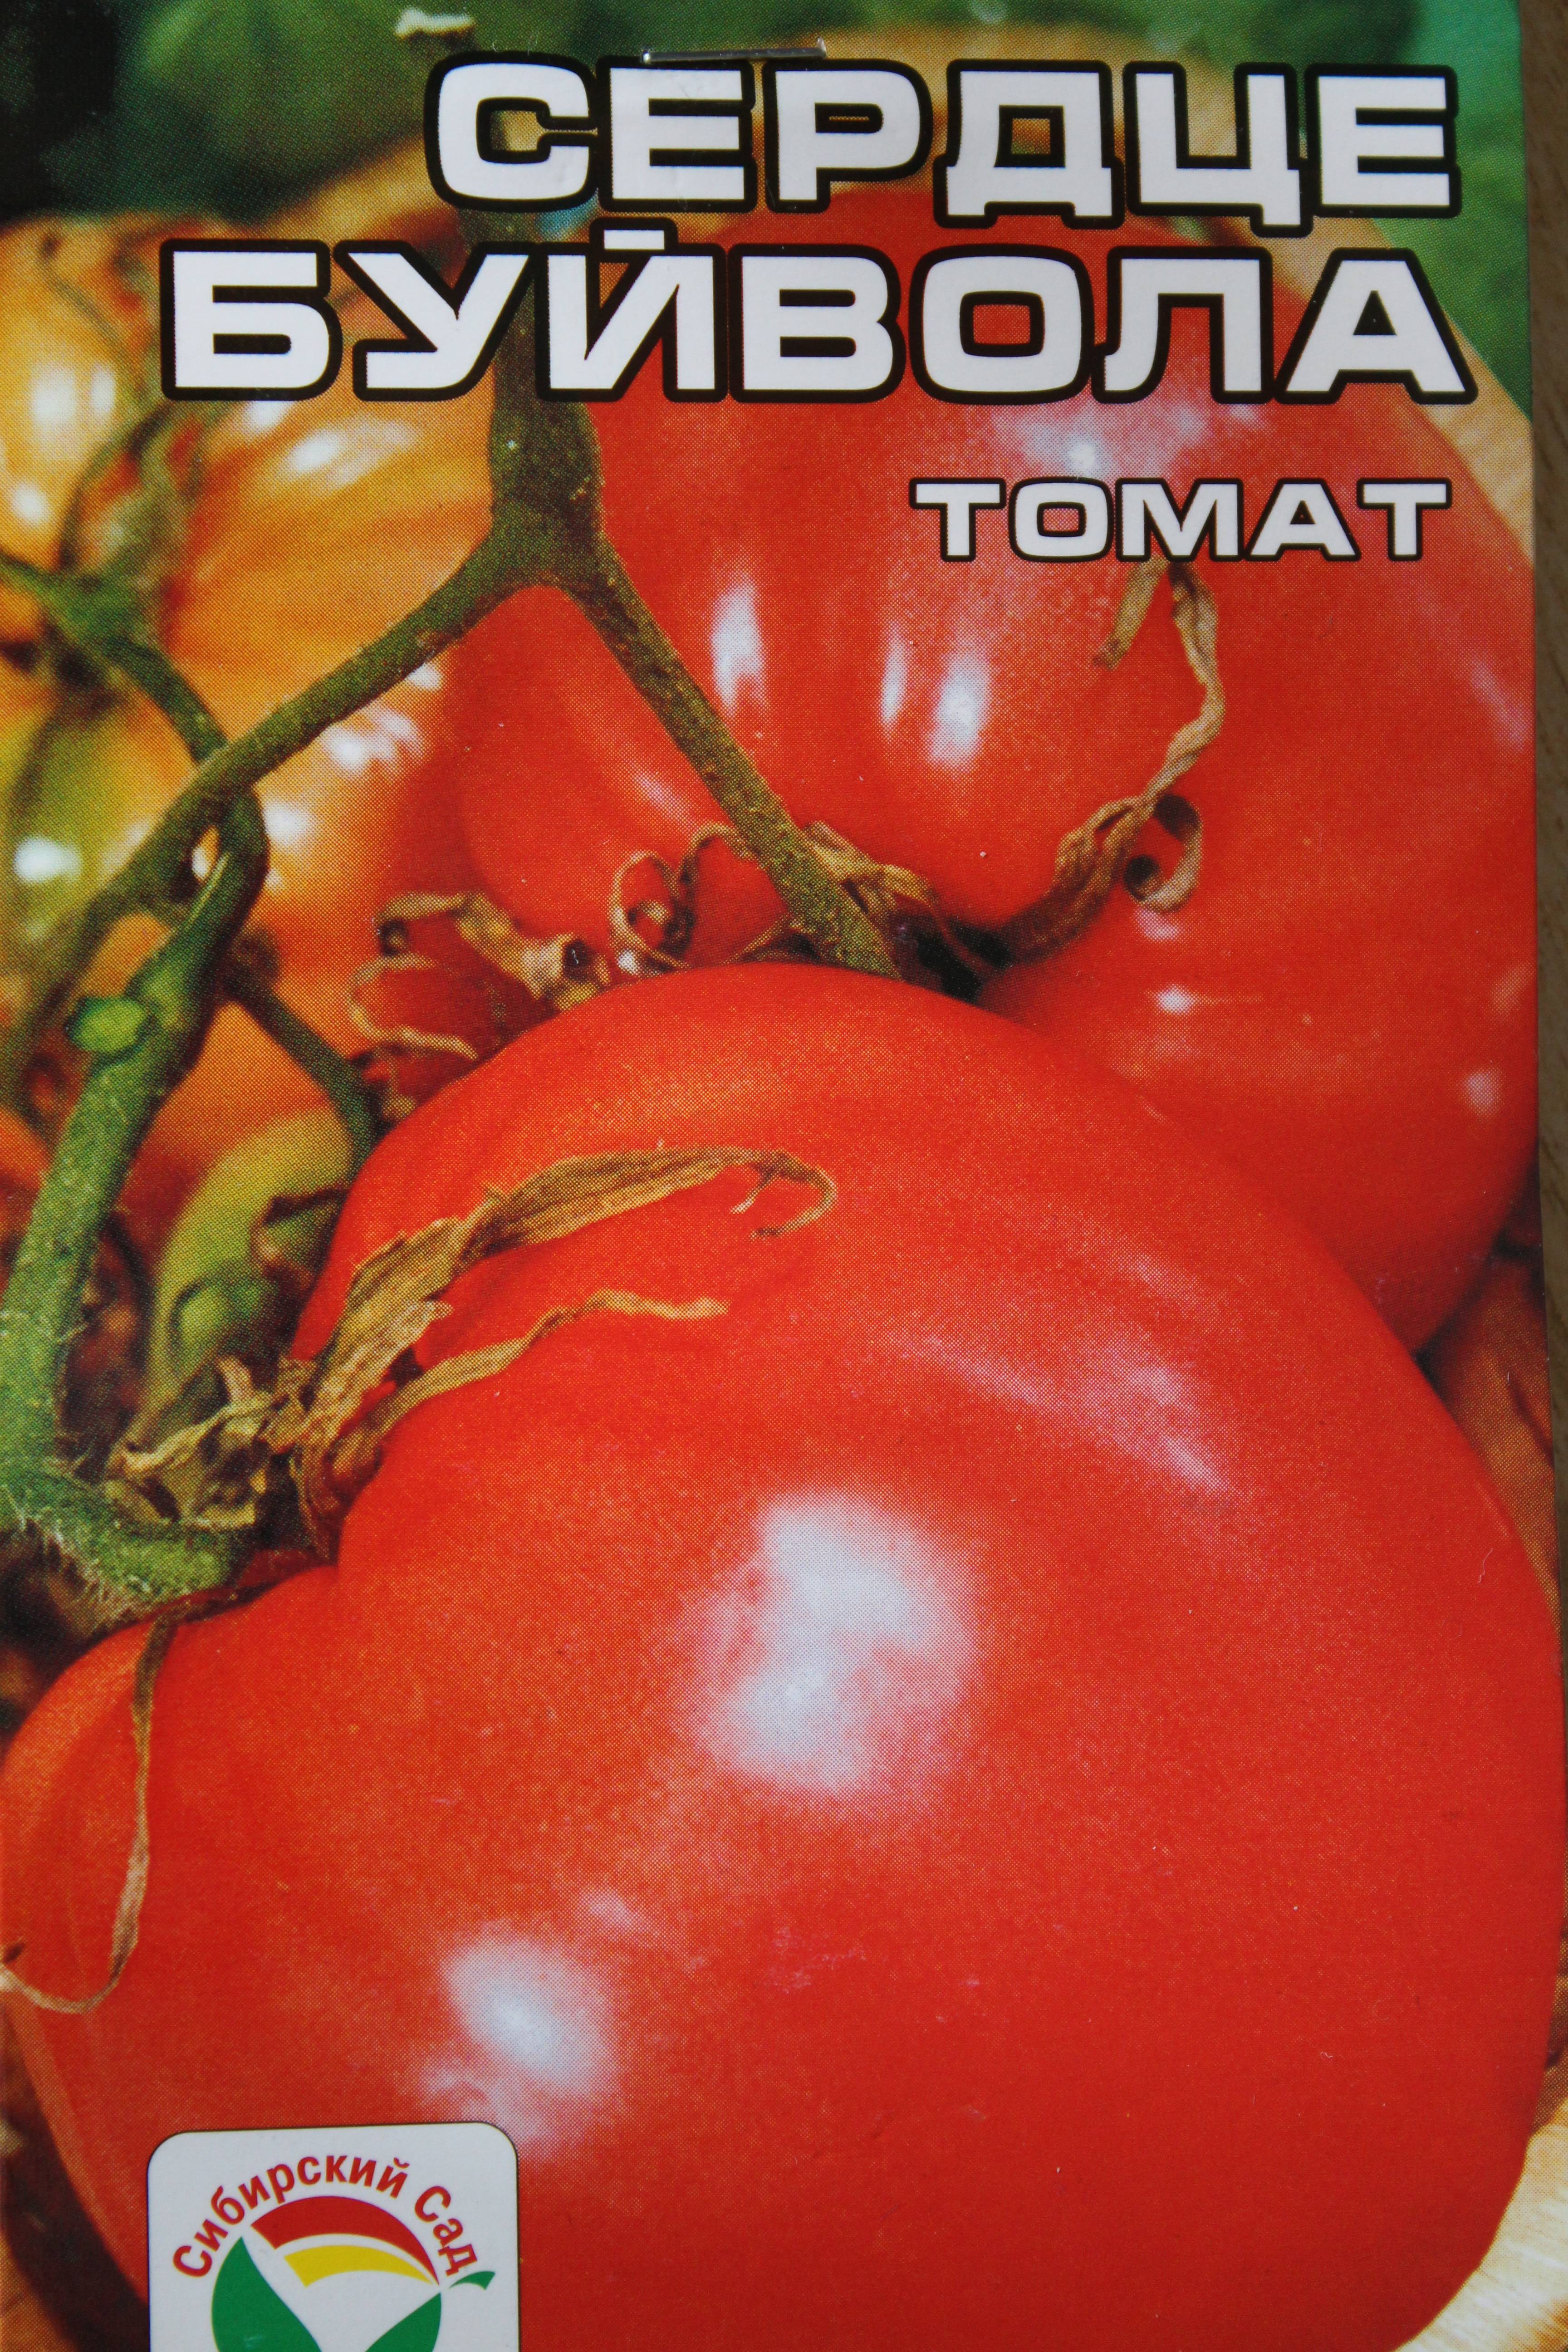 Томат сердце буйвола: характеристика и описание сорта, его преимущества и недостатки, секреты выращивания помидоров